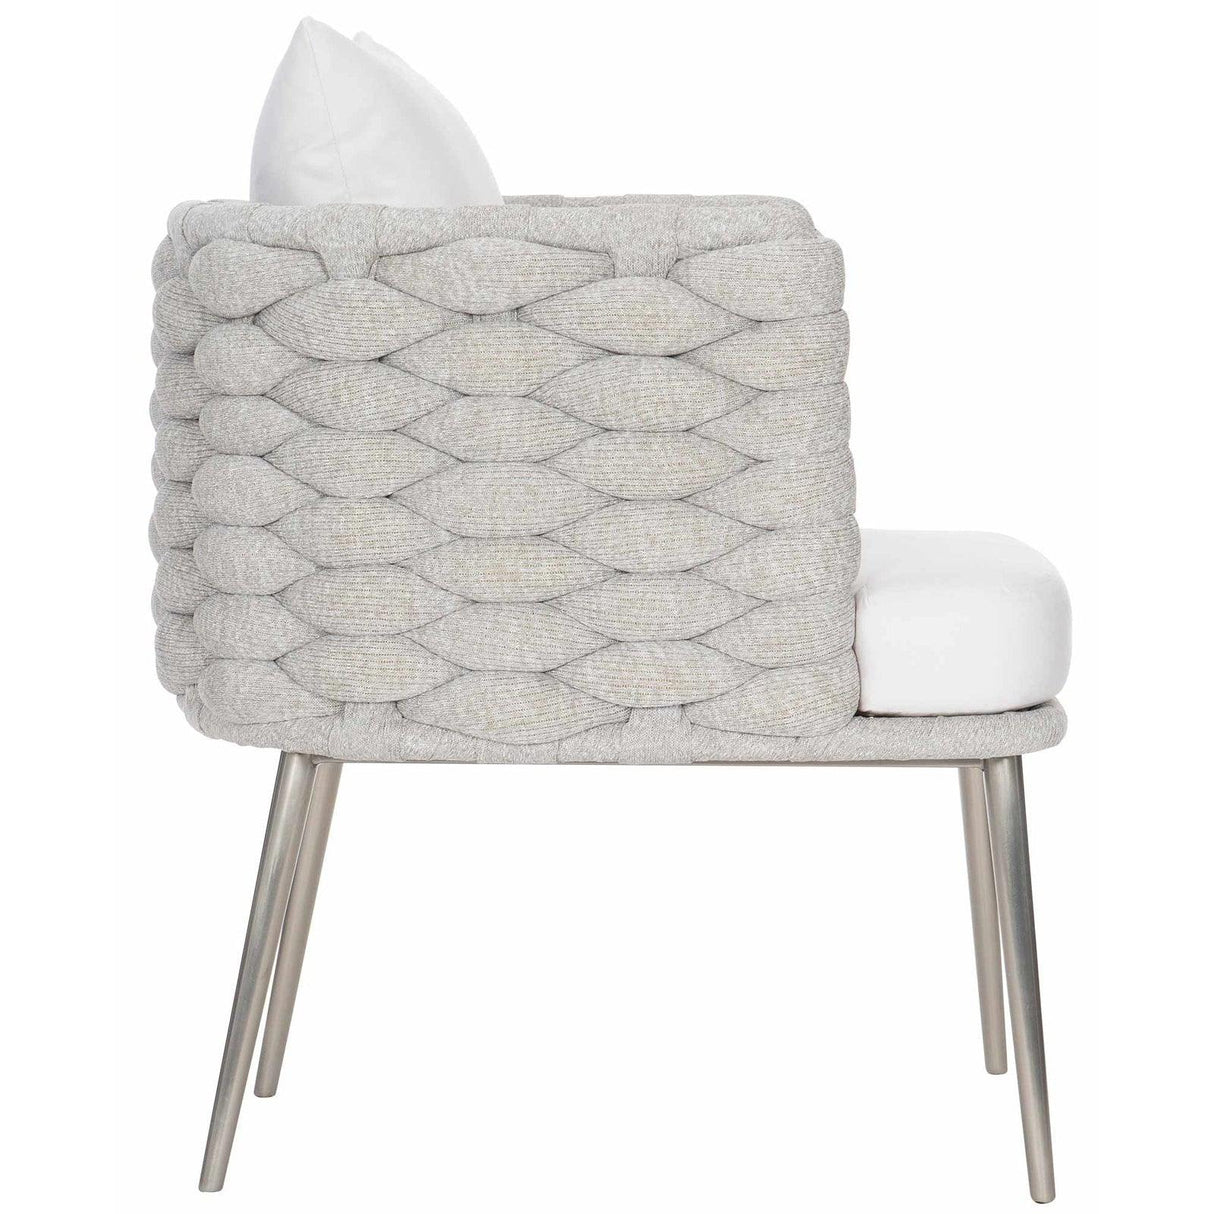 Bernhardt Exteriors Santa Cruz Arm Chair - Home Elegance USA